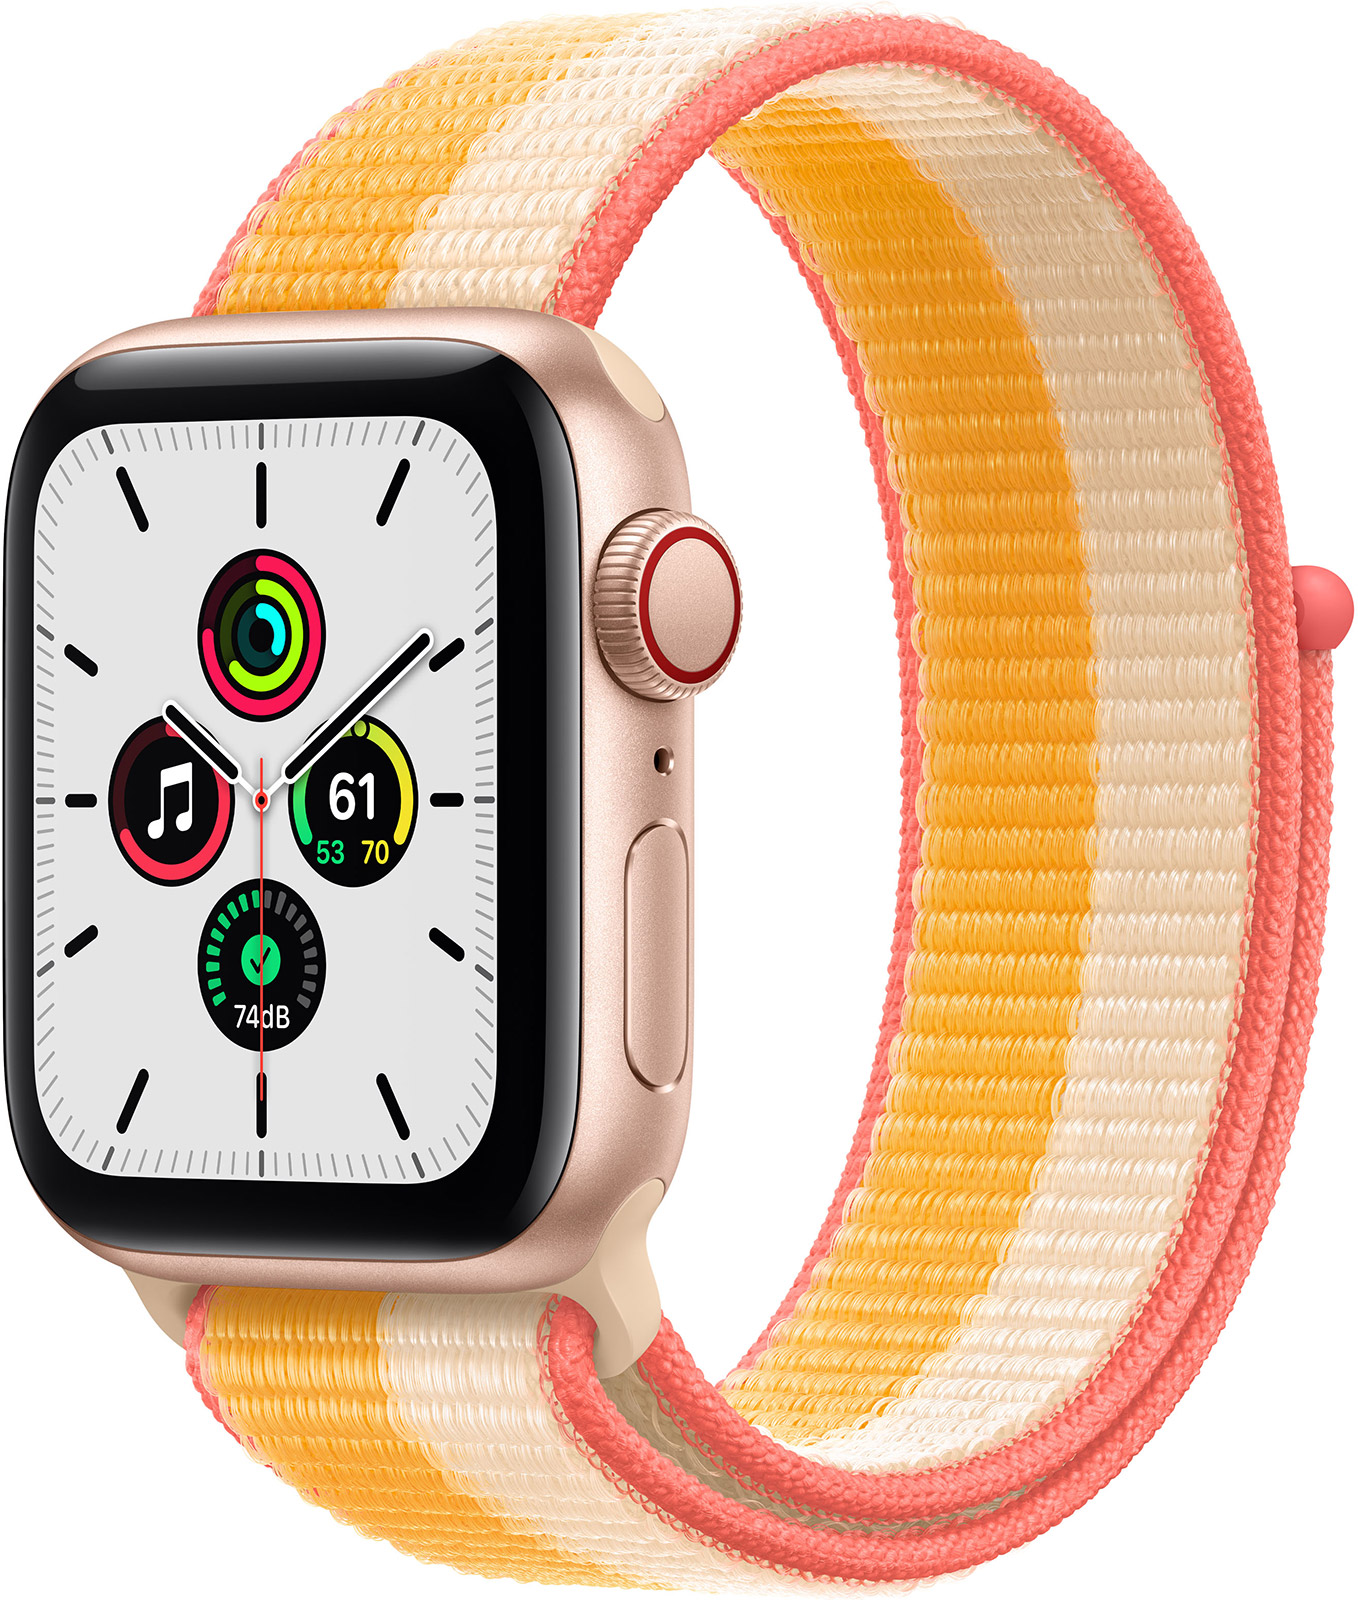 Apple-Watch-SE-GPS-Cellular-40-mm-Aluminium-Gold-Sport-Loop-Indischgelb-Weiss-01.jpg